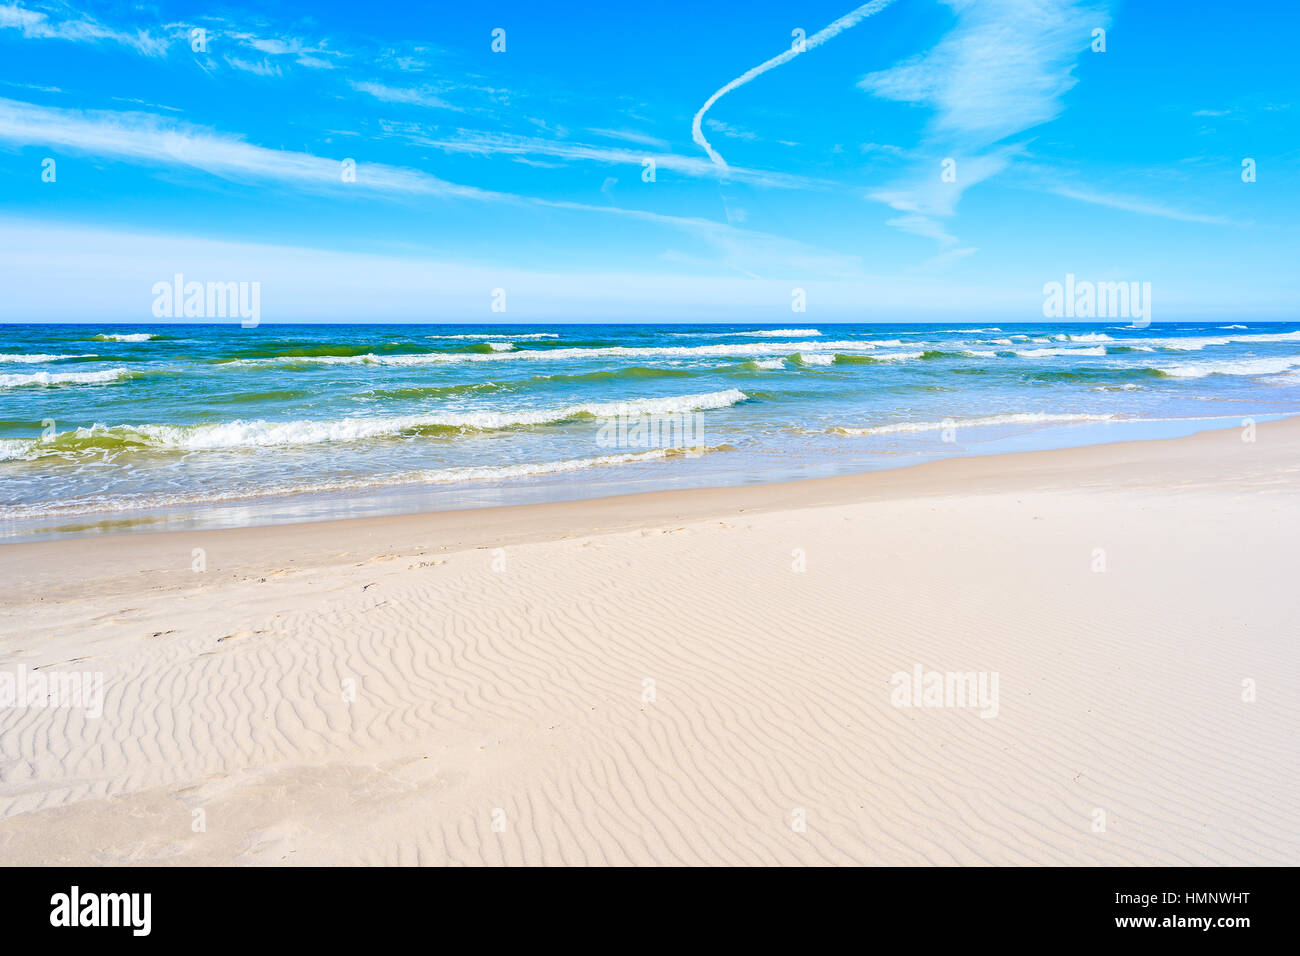 Les vagues de la mer sur la plage de sable de Debki, mer Baltique, Pologne Banque D'Images